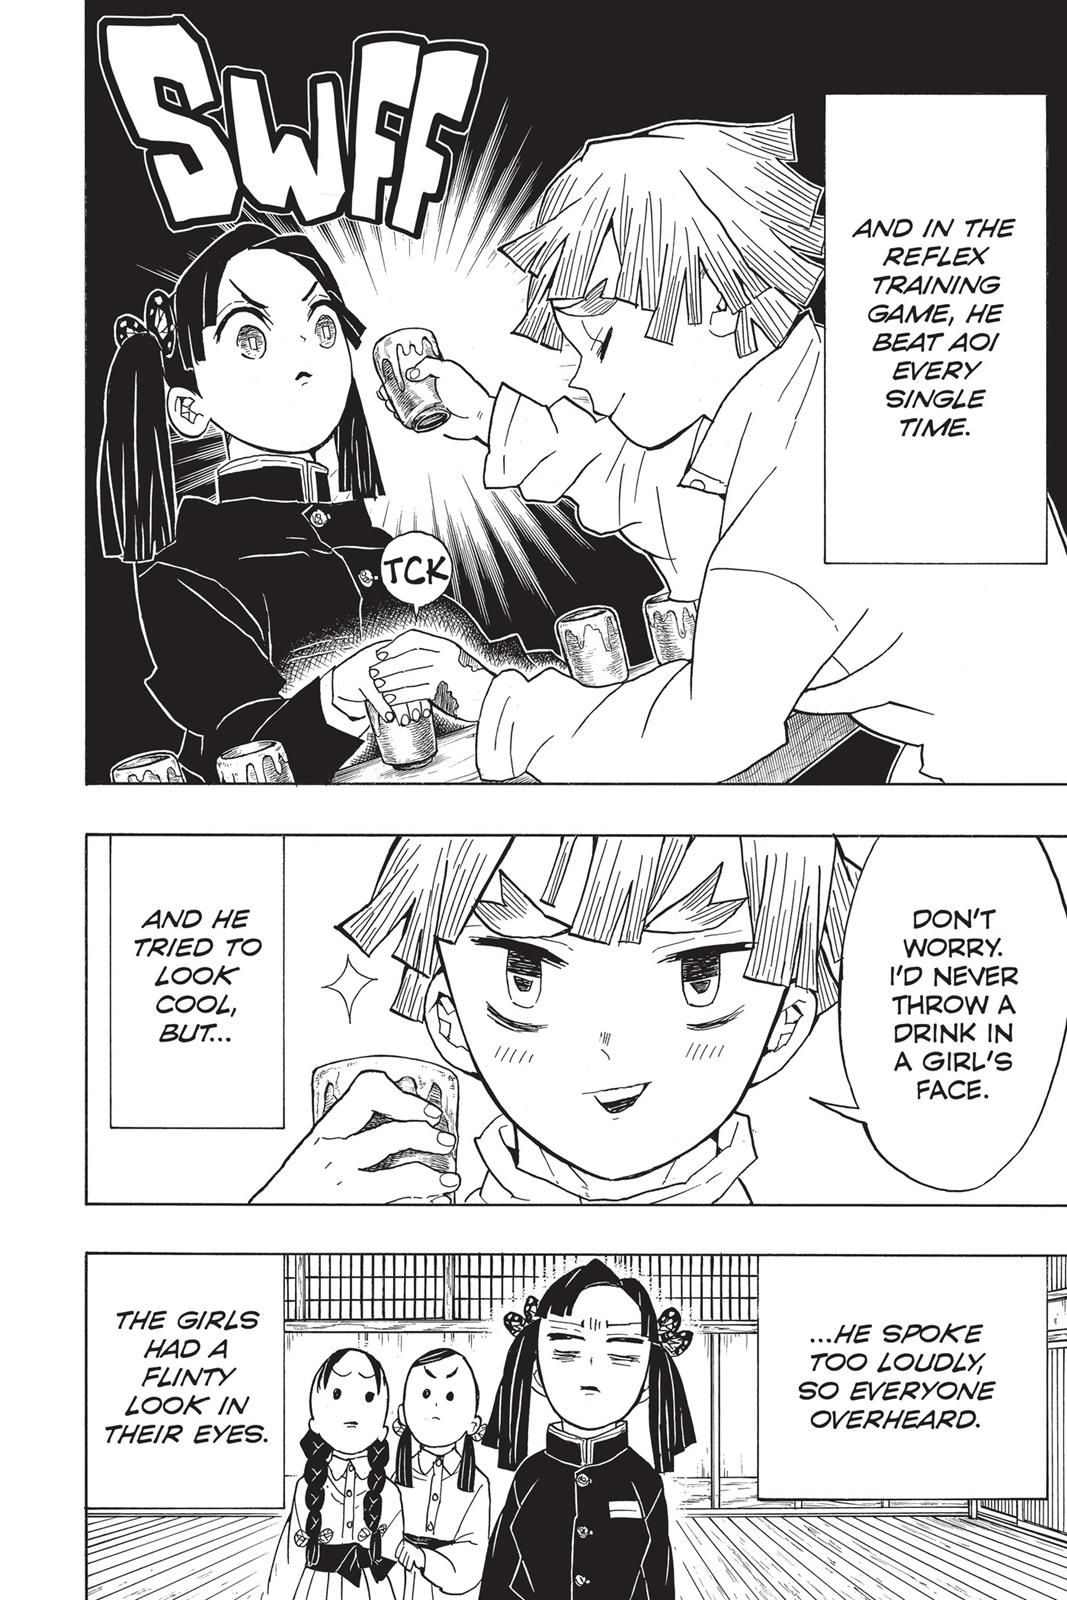 Demon Slayer Manga Manga Chapter - 49 - image 12